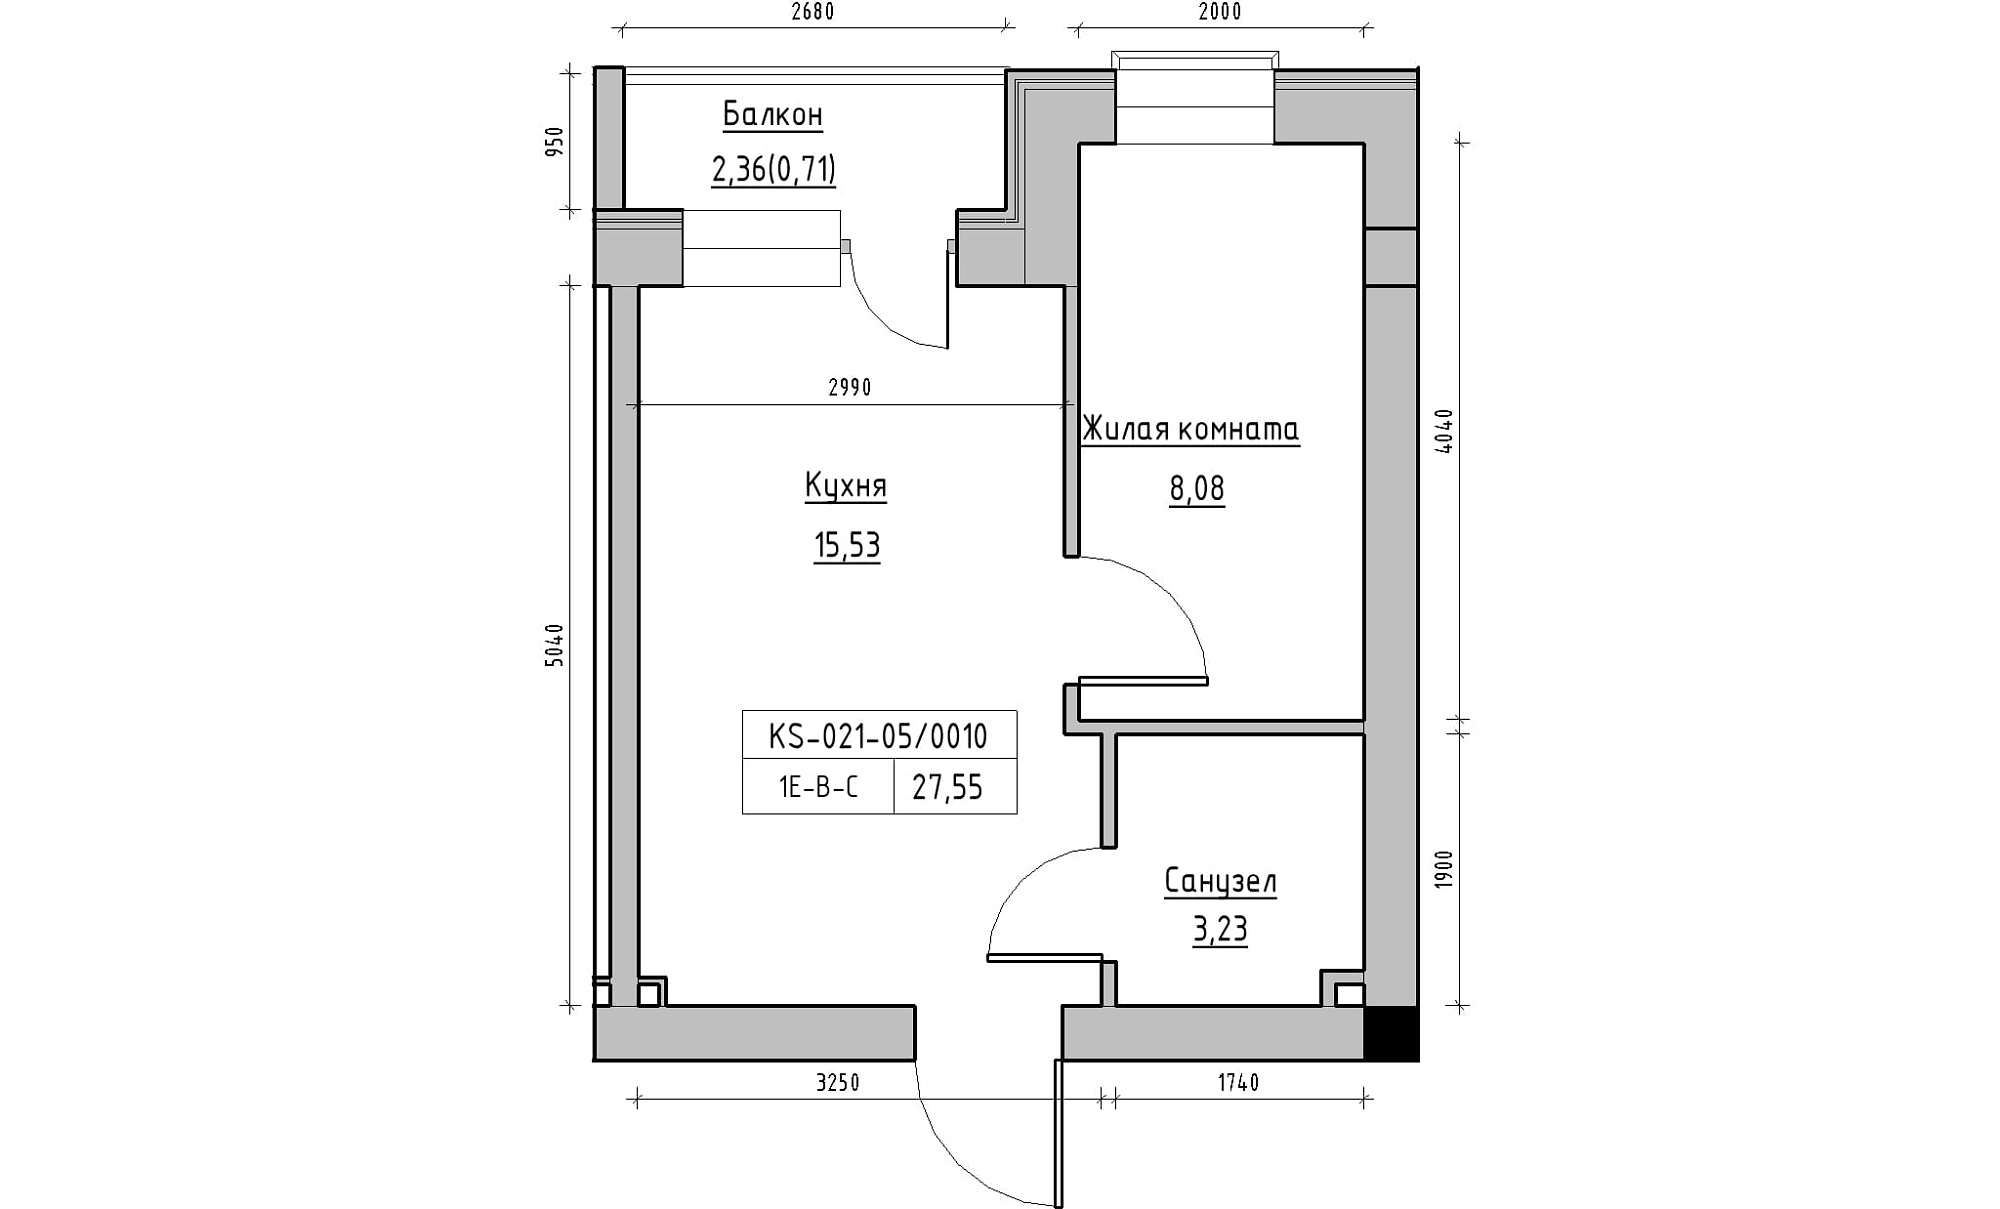 Планування 1-к квартира площею 27.55м2, KS-021-05/0010.